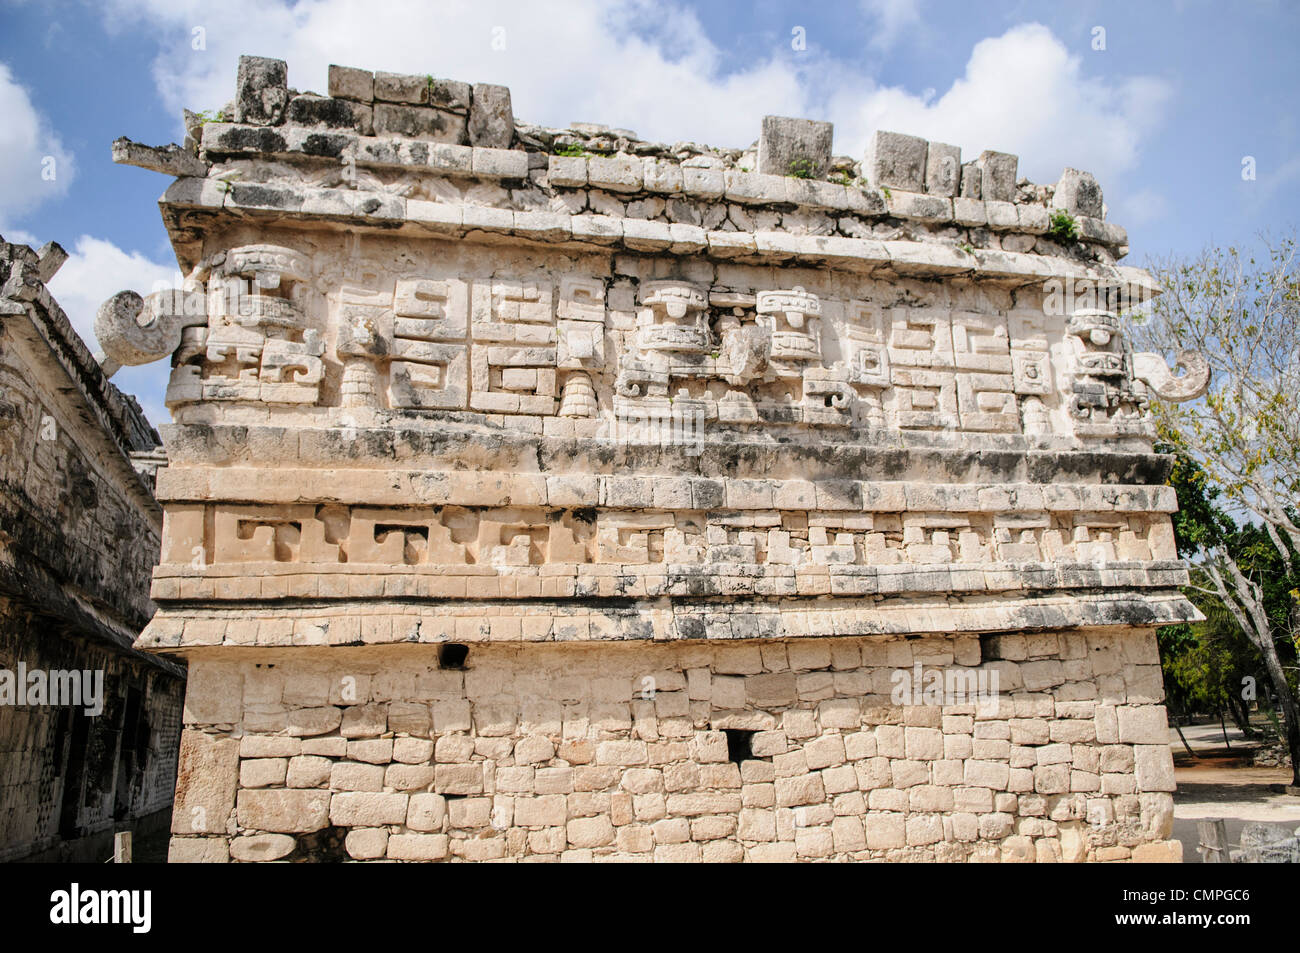 CHICHEN ITZA, Mexique - bâtiment richement décoré à Chichen Itza ruines Maya au Mexique. C'est le côté de 'l'Eglise' dans le quartier de Las Monjas complexe de bâtiments sur le site. Banque D'Images